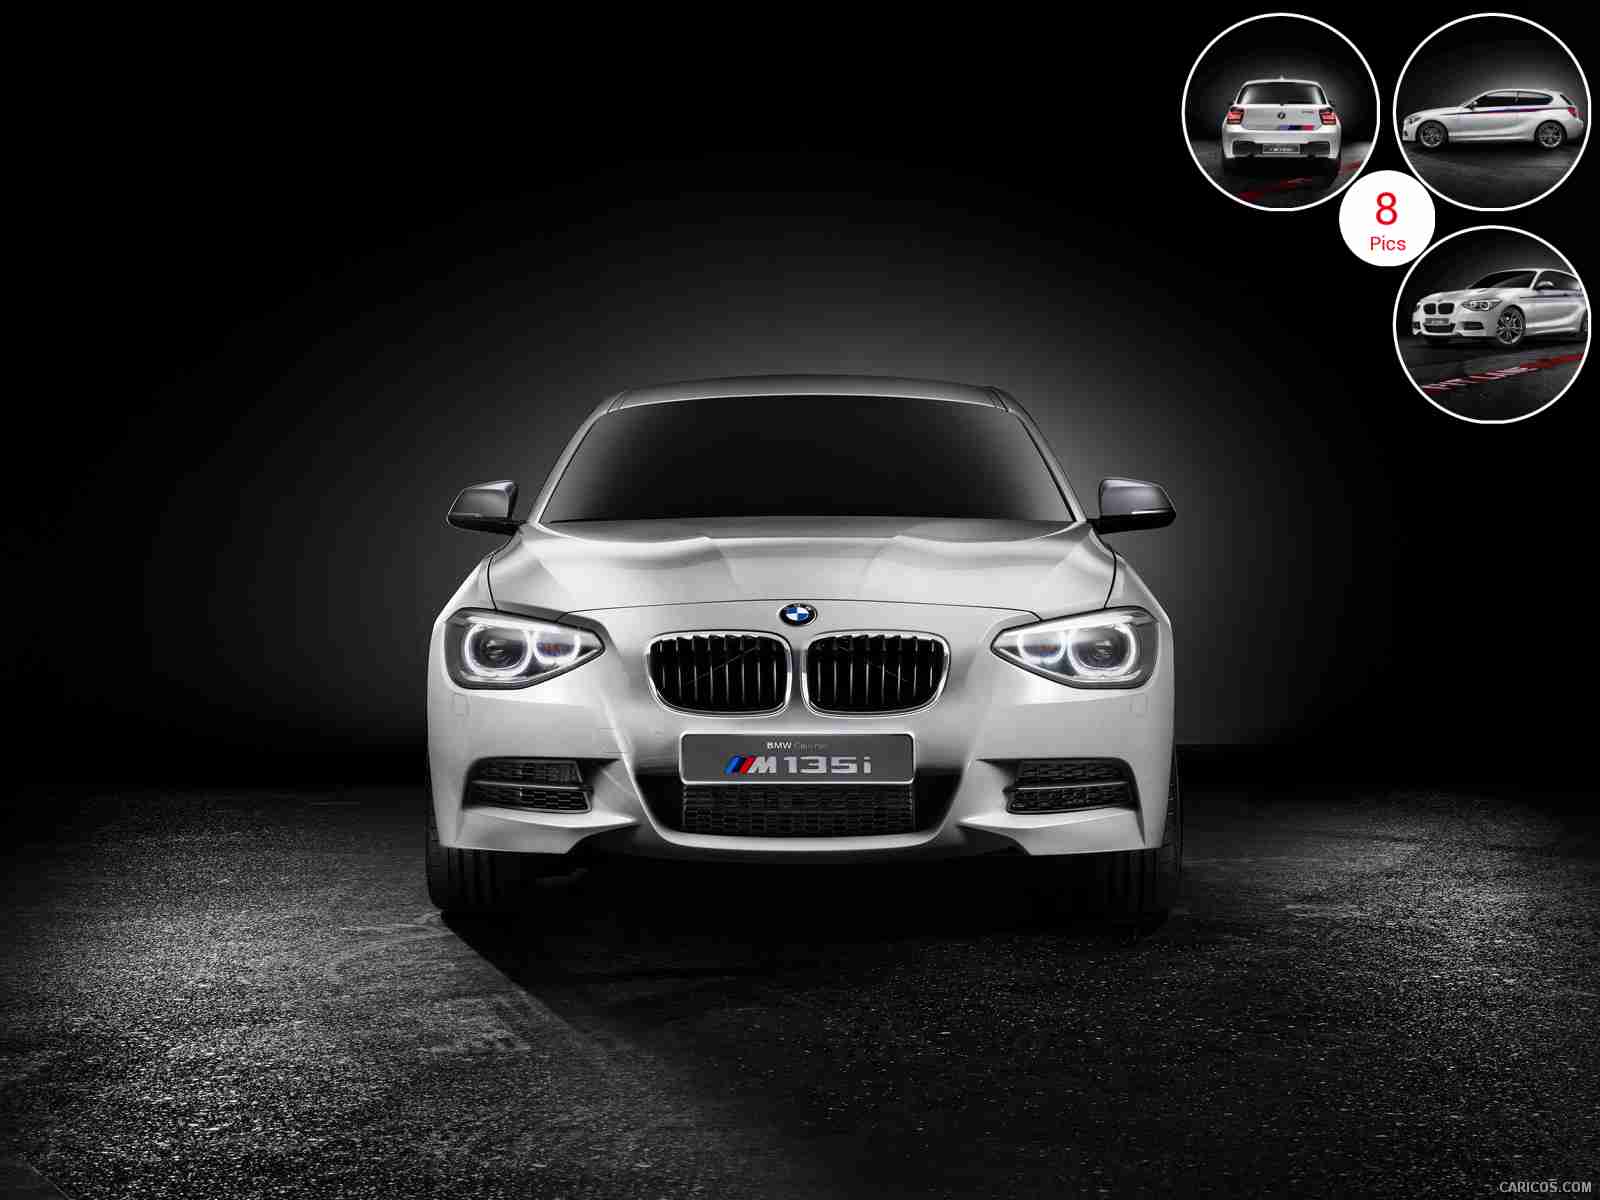 2012 BMW Concept M 135i - Front | Wallpaper #5 | 1600x1200